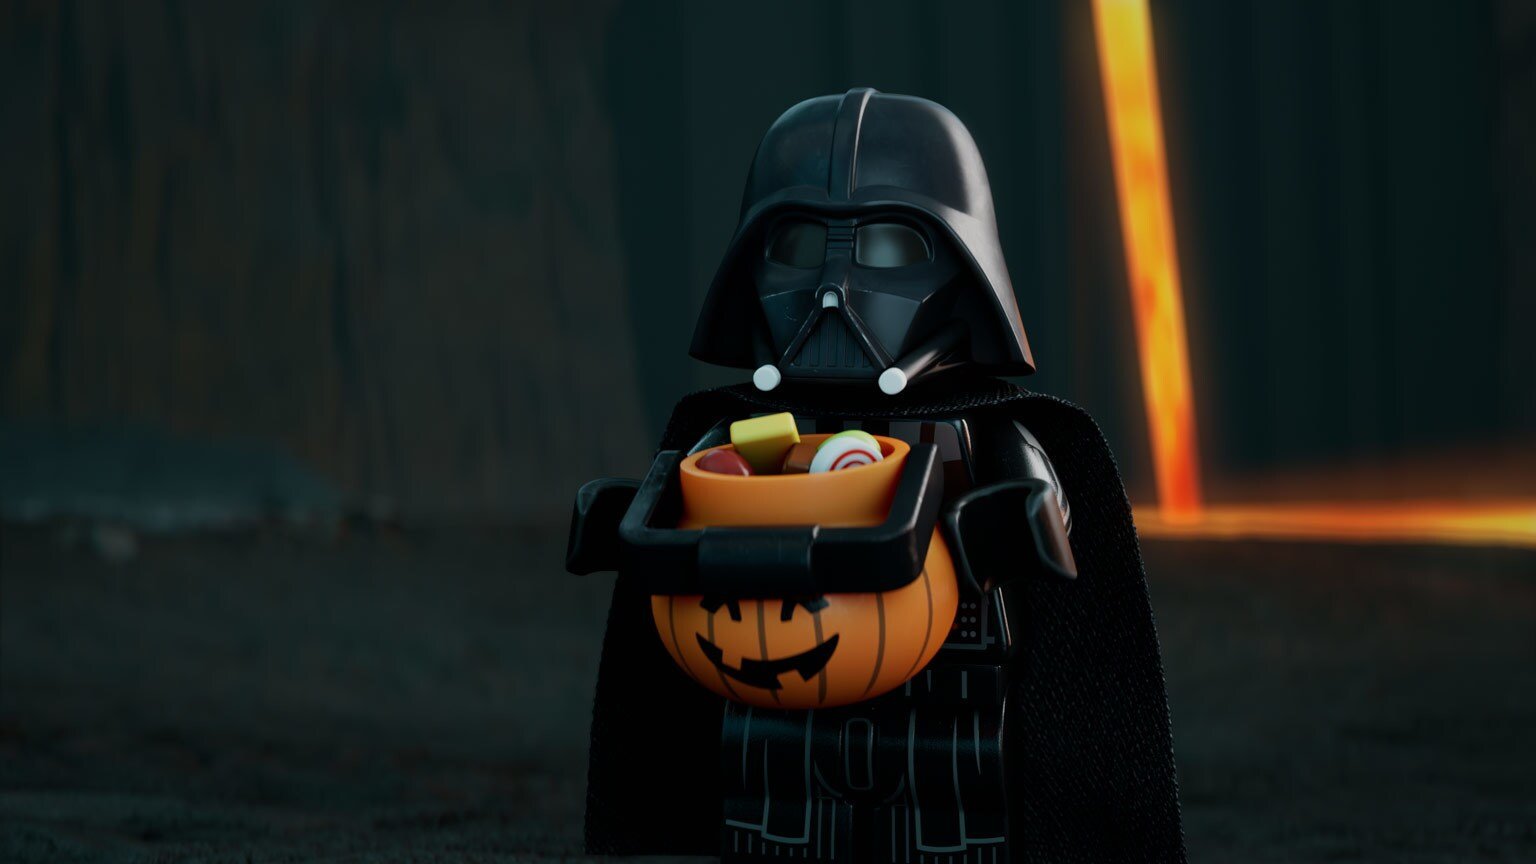 Darth Vader in Lego Star Wars short